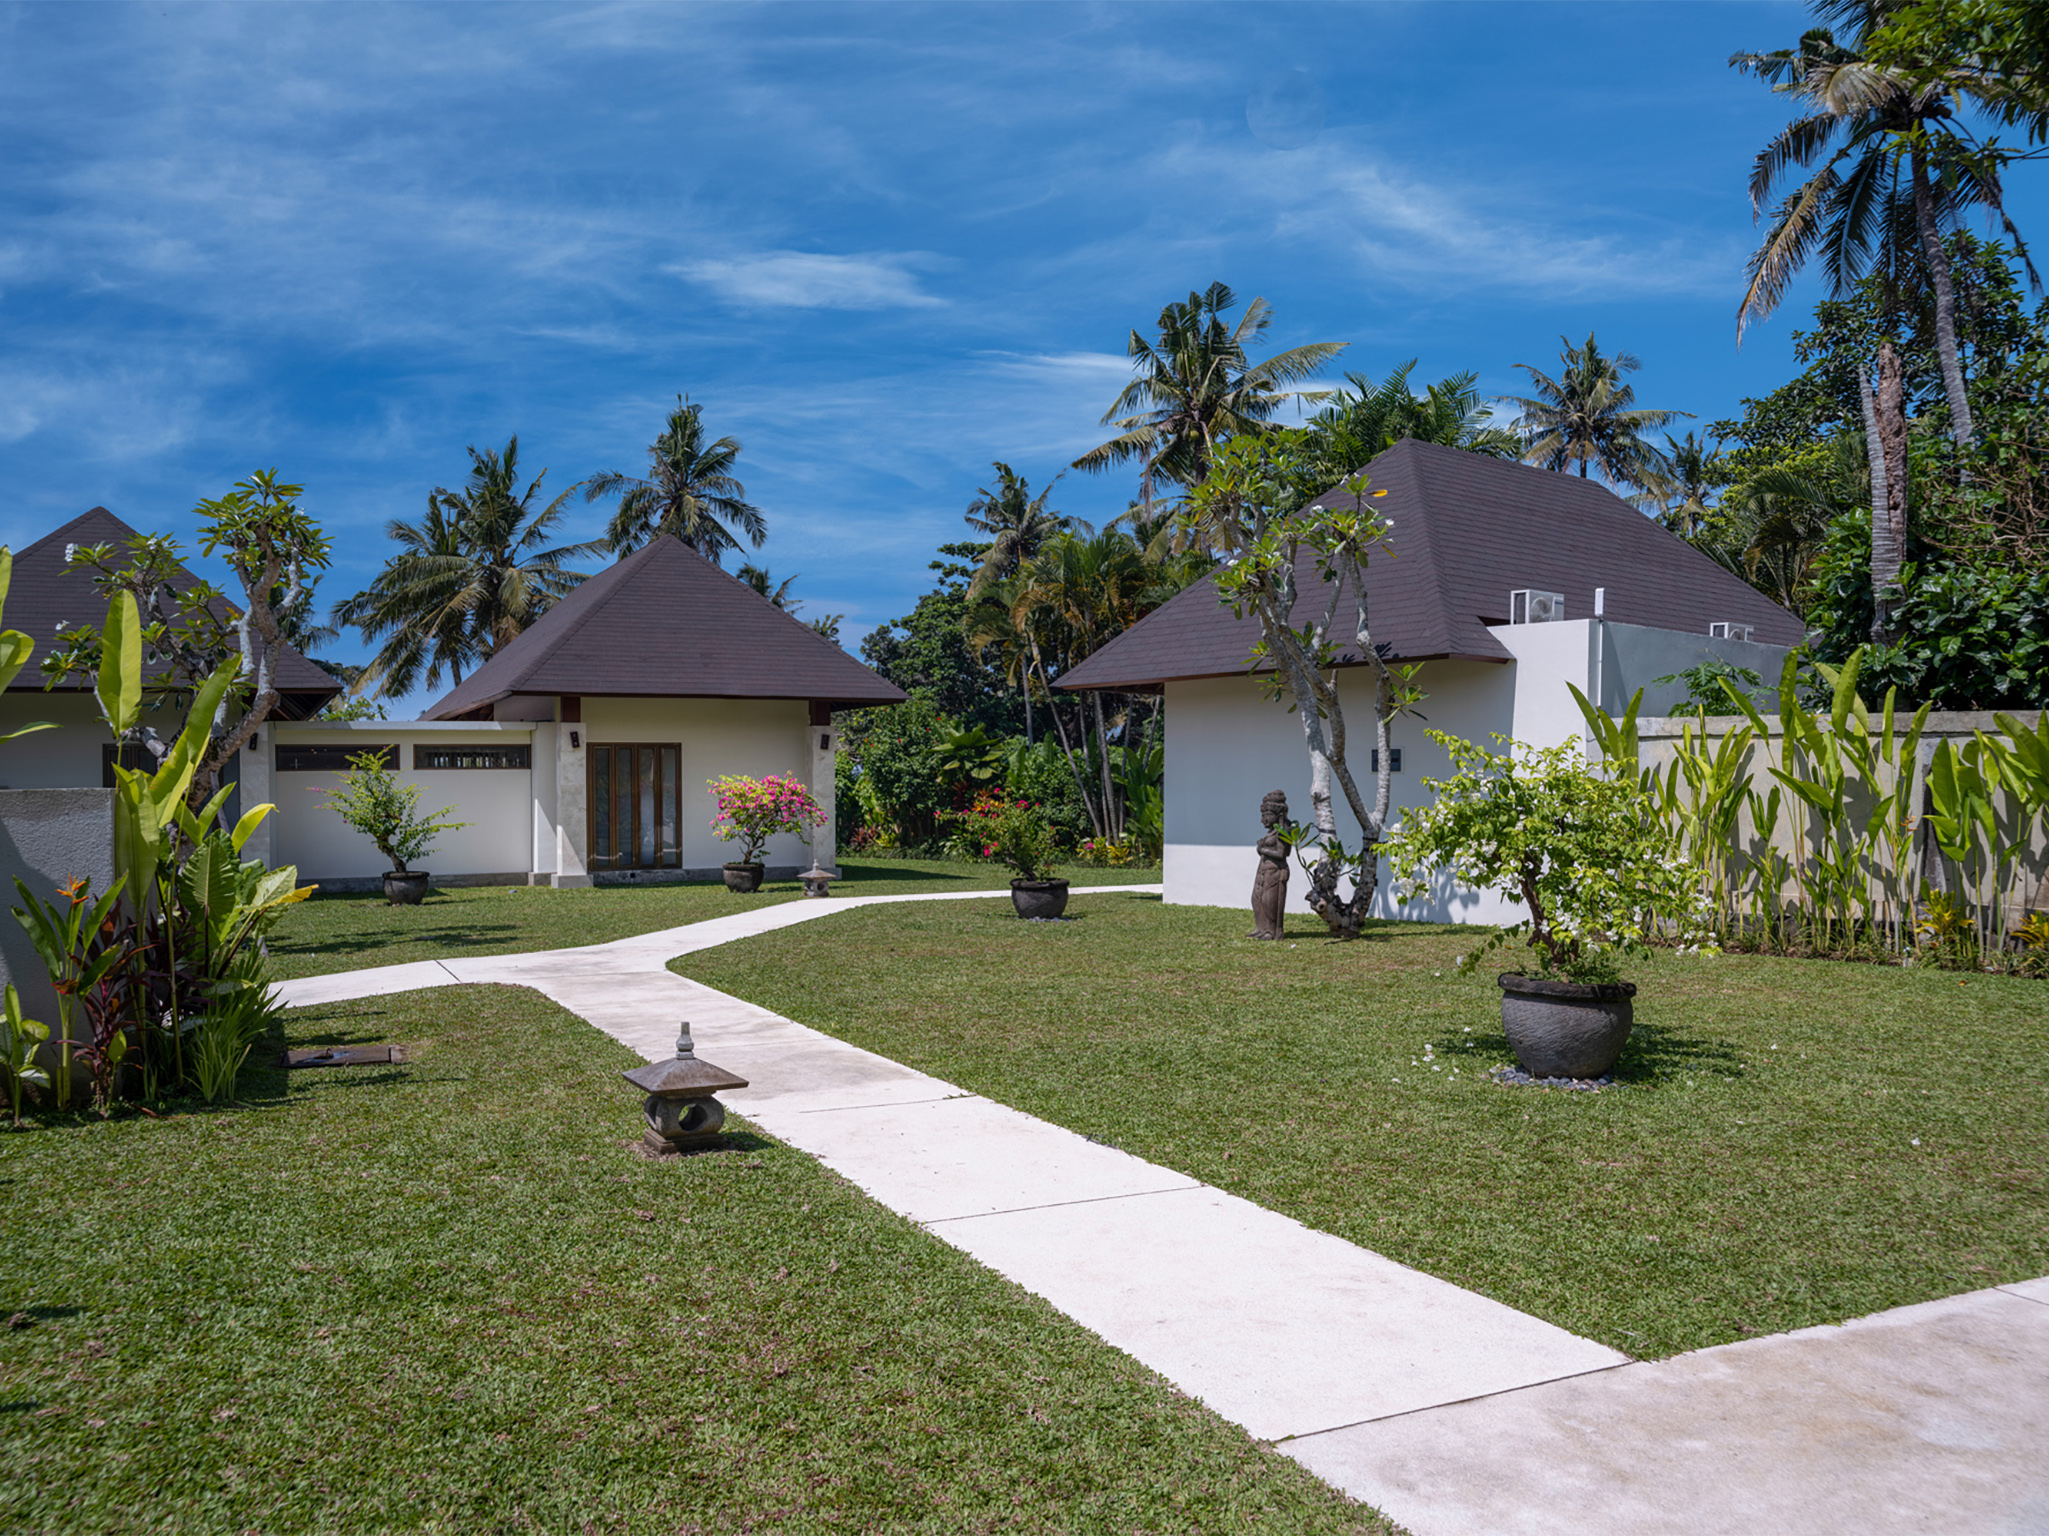 Villa Kailasha - Walkway to the pavilion guestrooms - Villa Kailasha, Tabanan, Bali